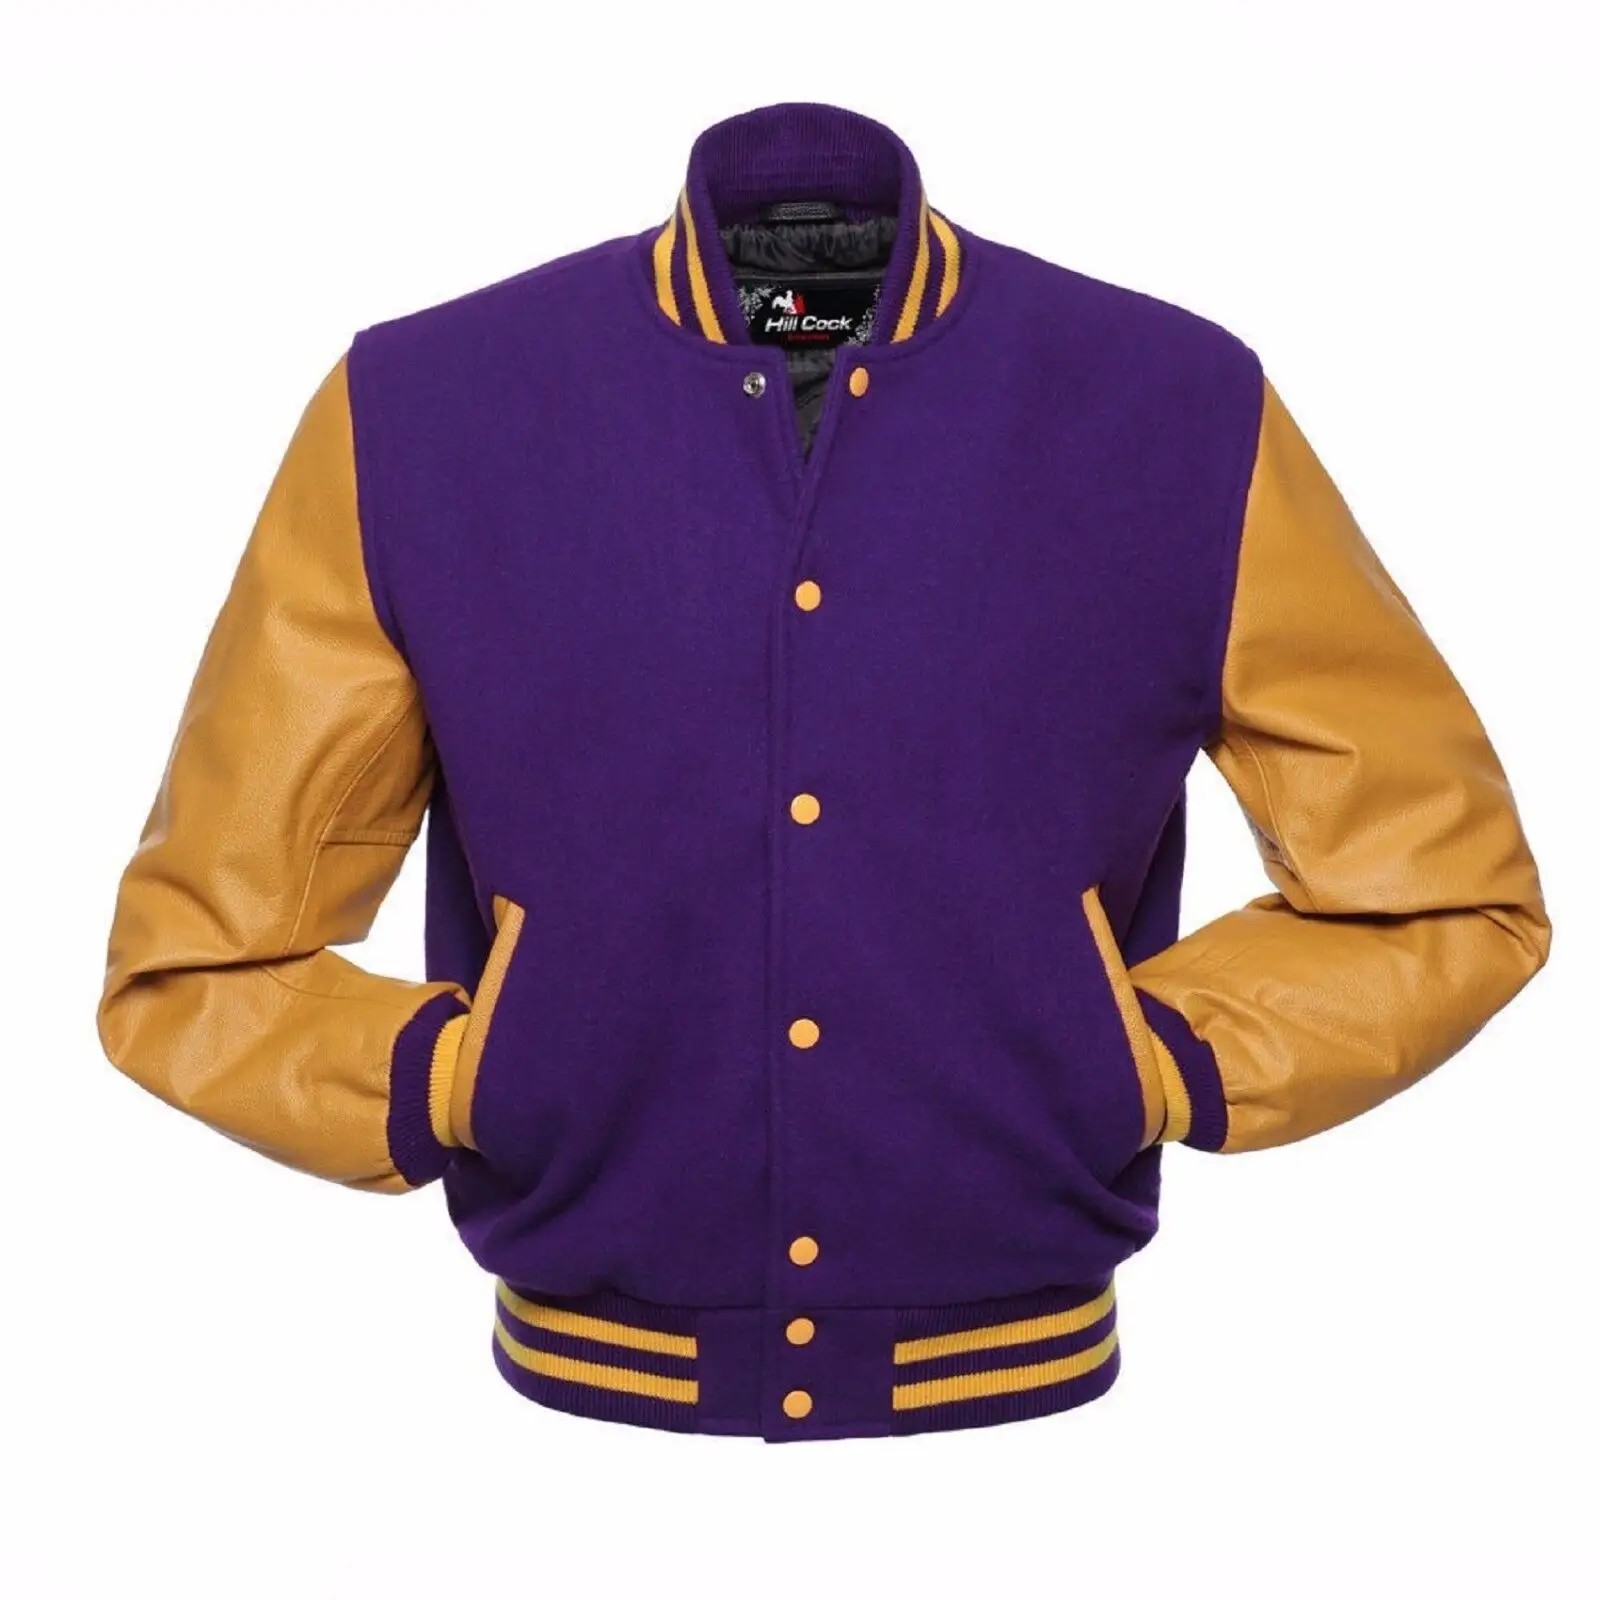 Abrigos y ropa de abrigo personalizados de invierno, chaqueta calefactable integral, cuerpo de lana informal dorado púrpura, Mangas de cuero de piel de vaca